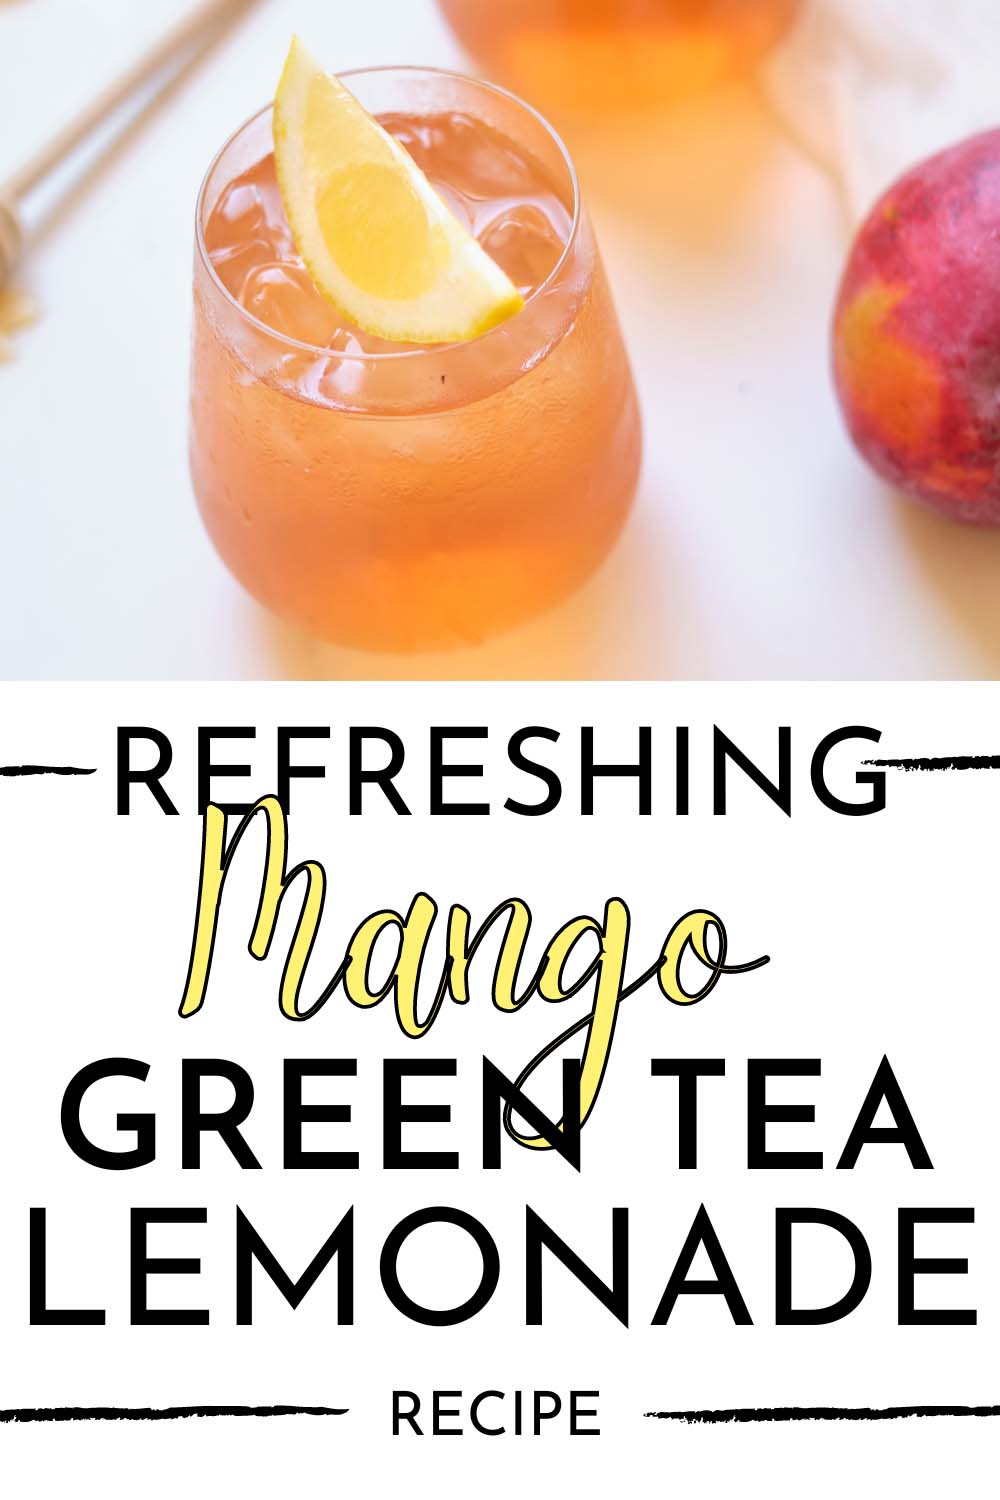 Refreshing Mango Green Tea Lemonade